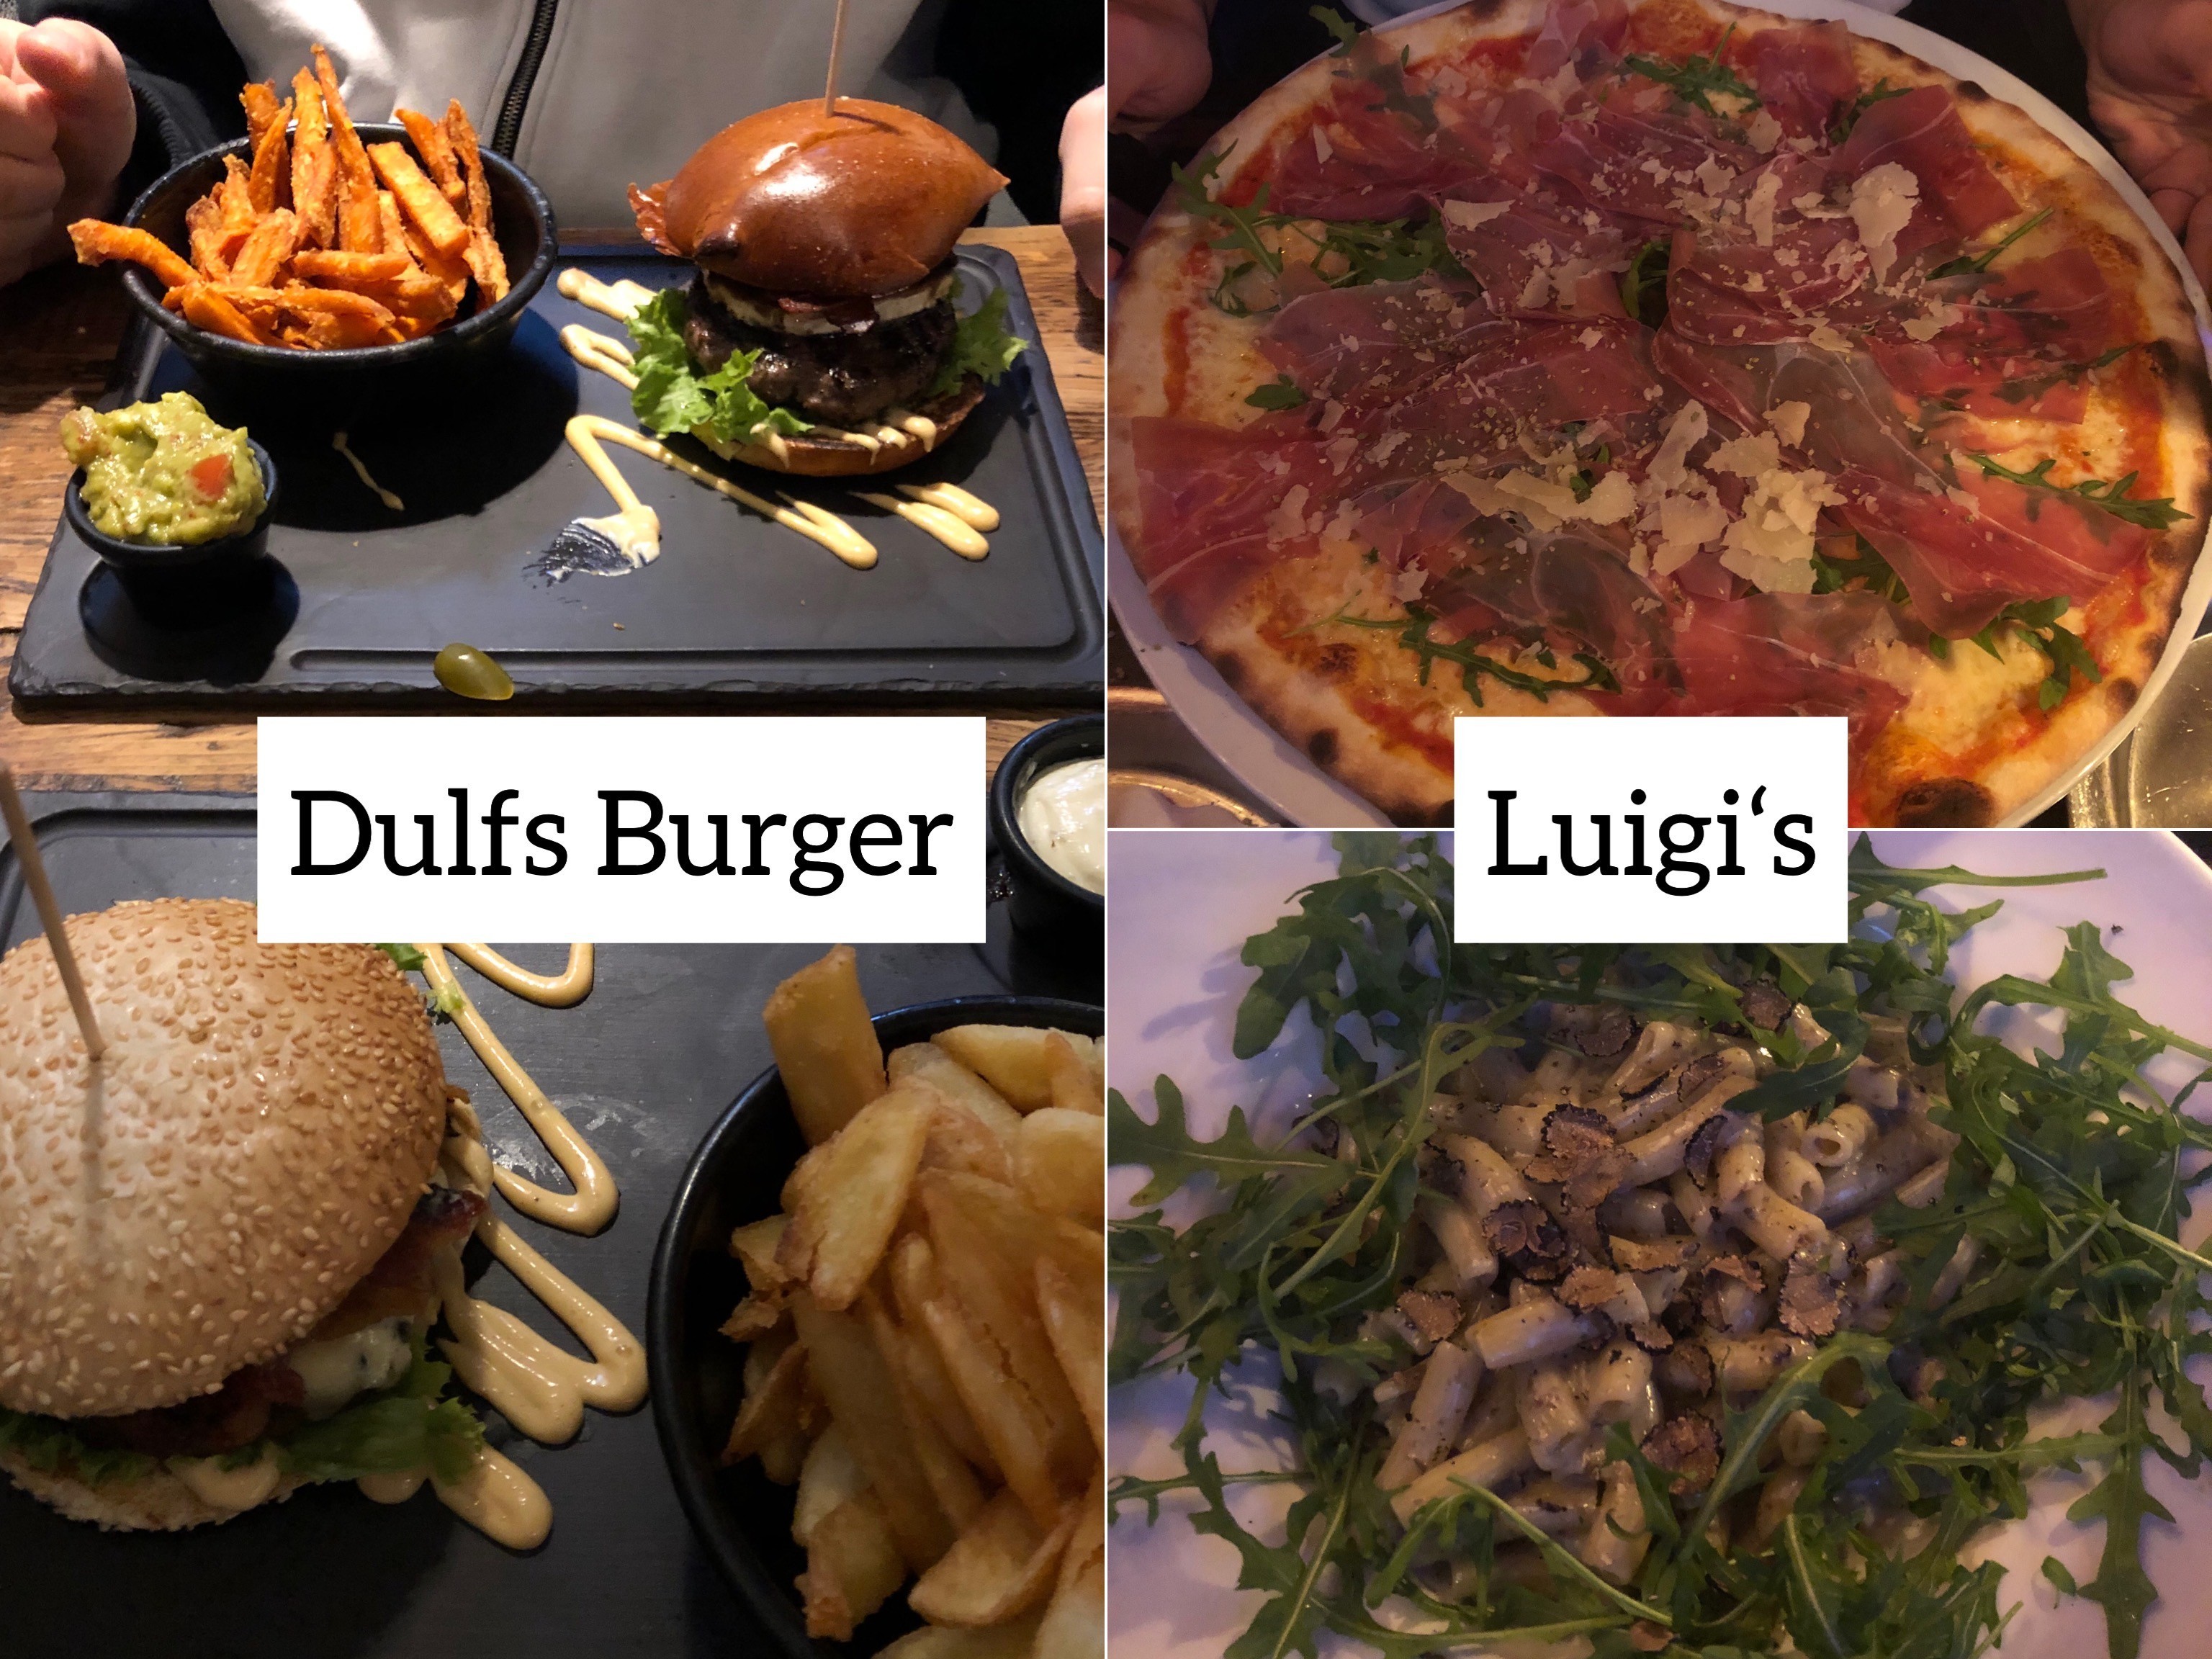 Leckeren Burger gibt es bei Dulfs Burger im Karolinenviertel. Ganz in der Nähe der Landungsbrücken ist der Italiener Luigi’s, den ich auch wärmsten empfehlen kann.